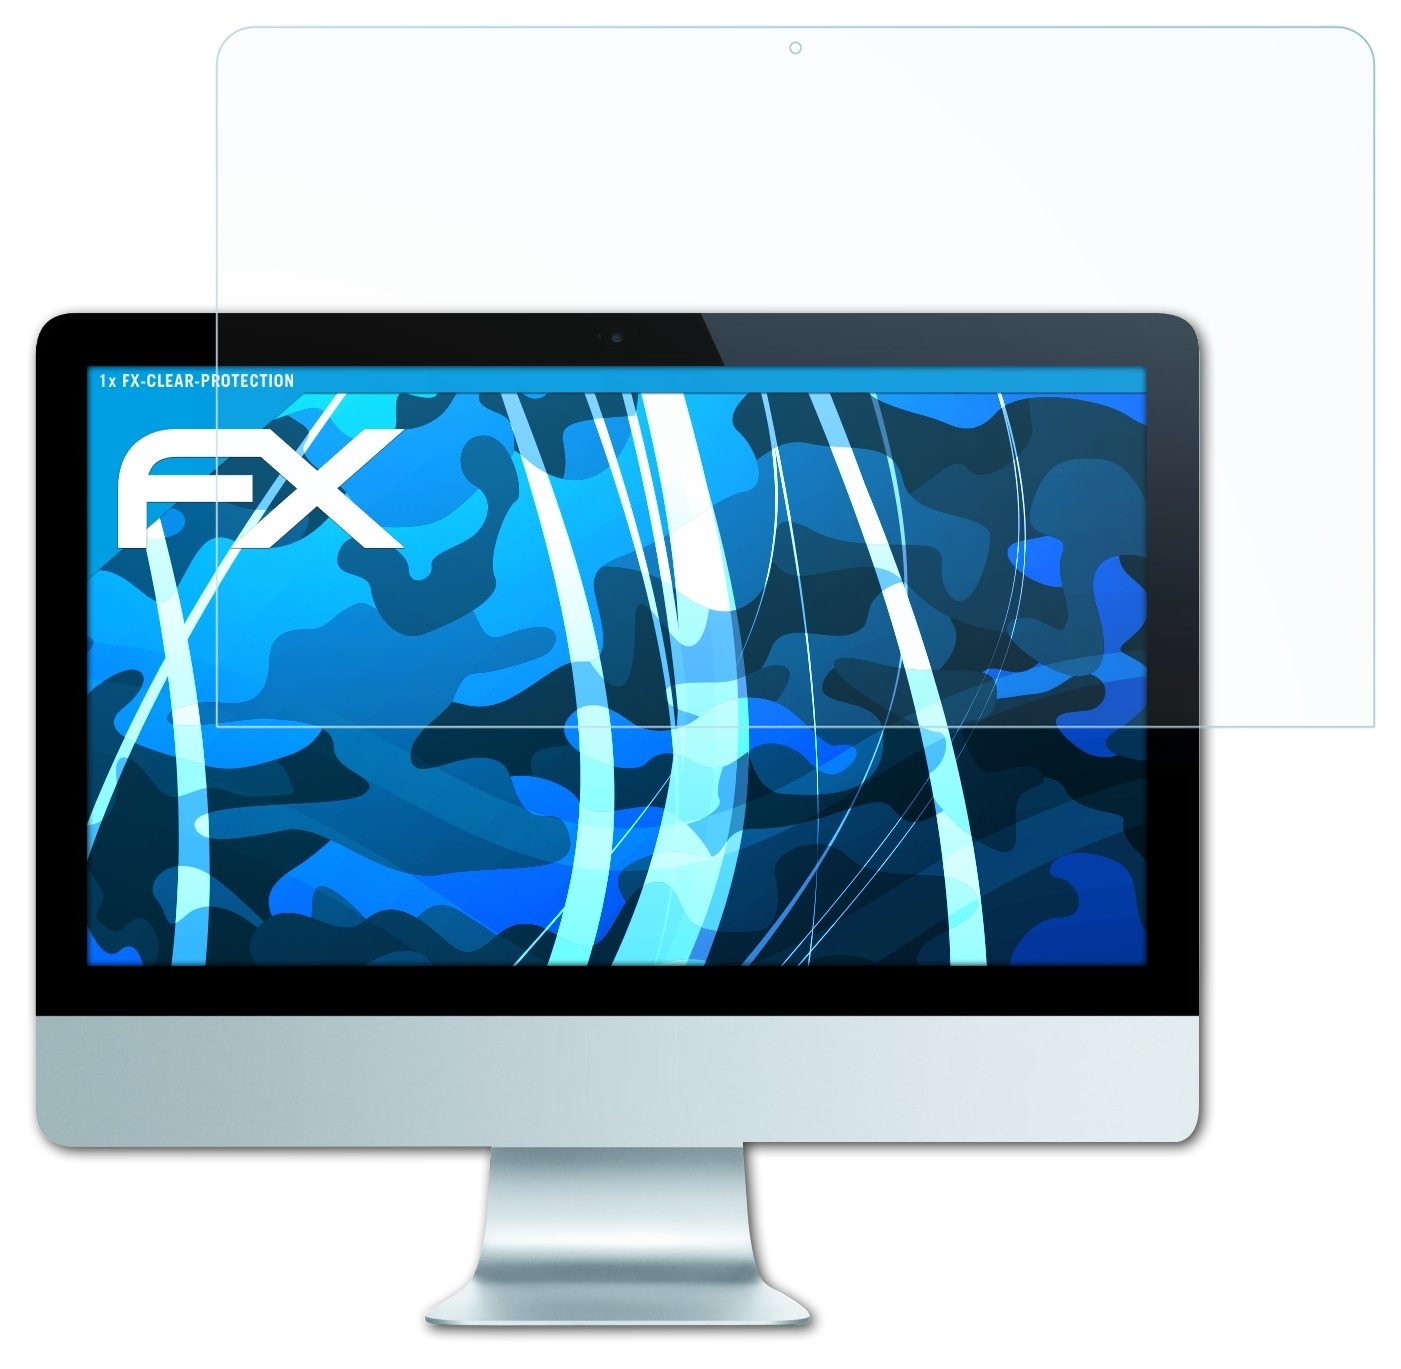 2012-2014)) iMac (Model Apple 21,5 Displayschutz(für ATFOLIX 7G FX-Clear